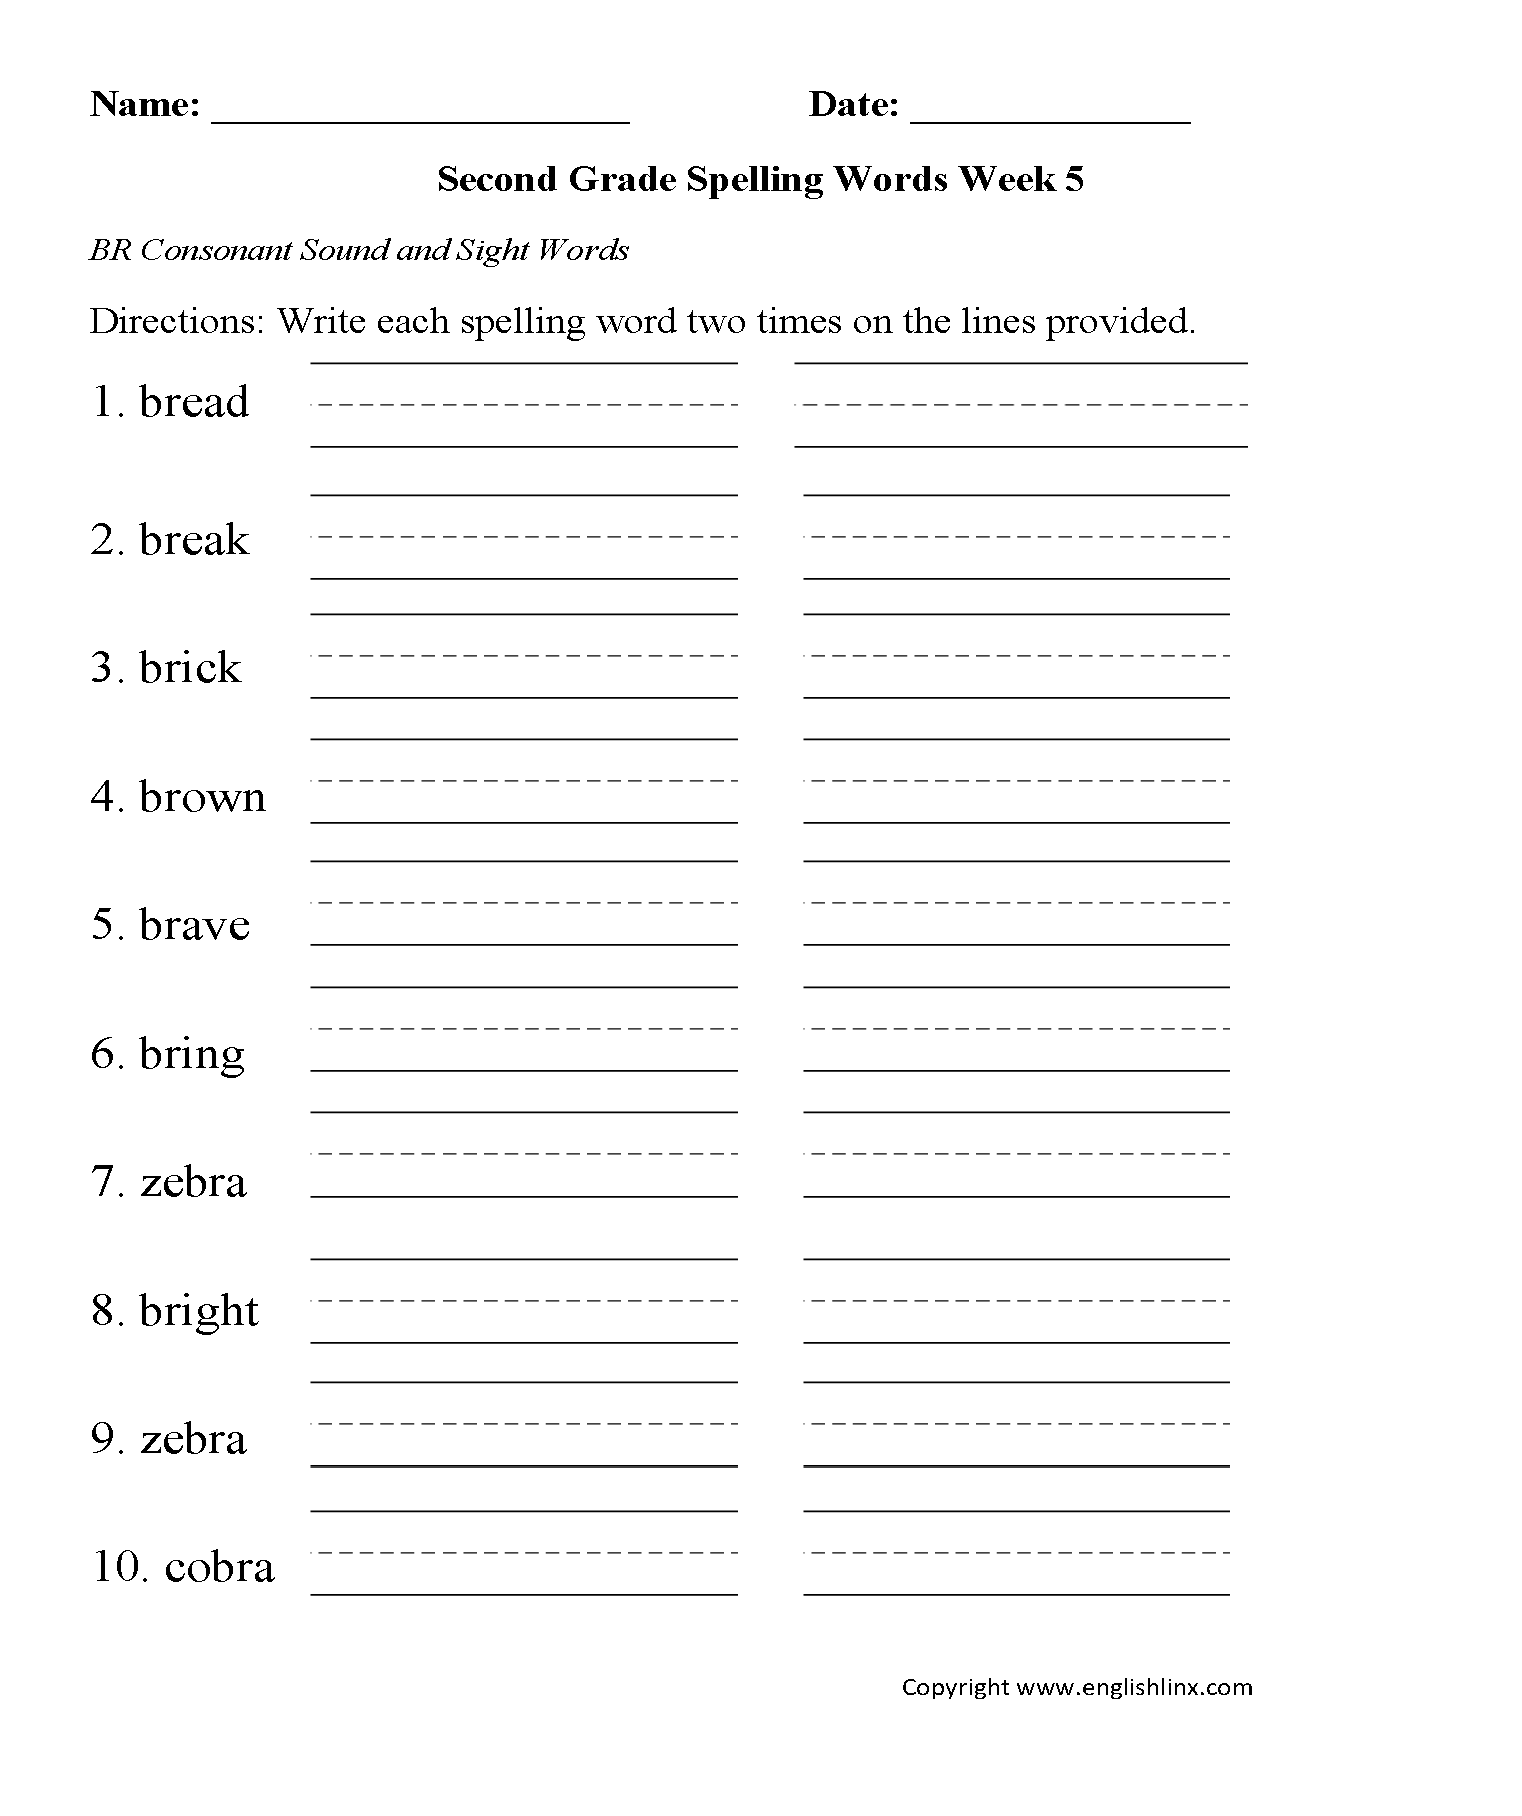 Week 5 BR Consonant Second Grade Spelling Worksheets